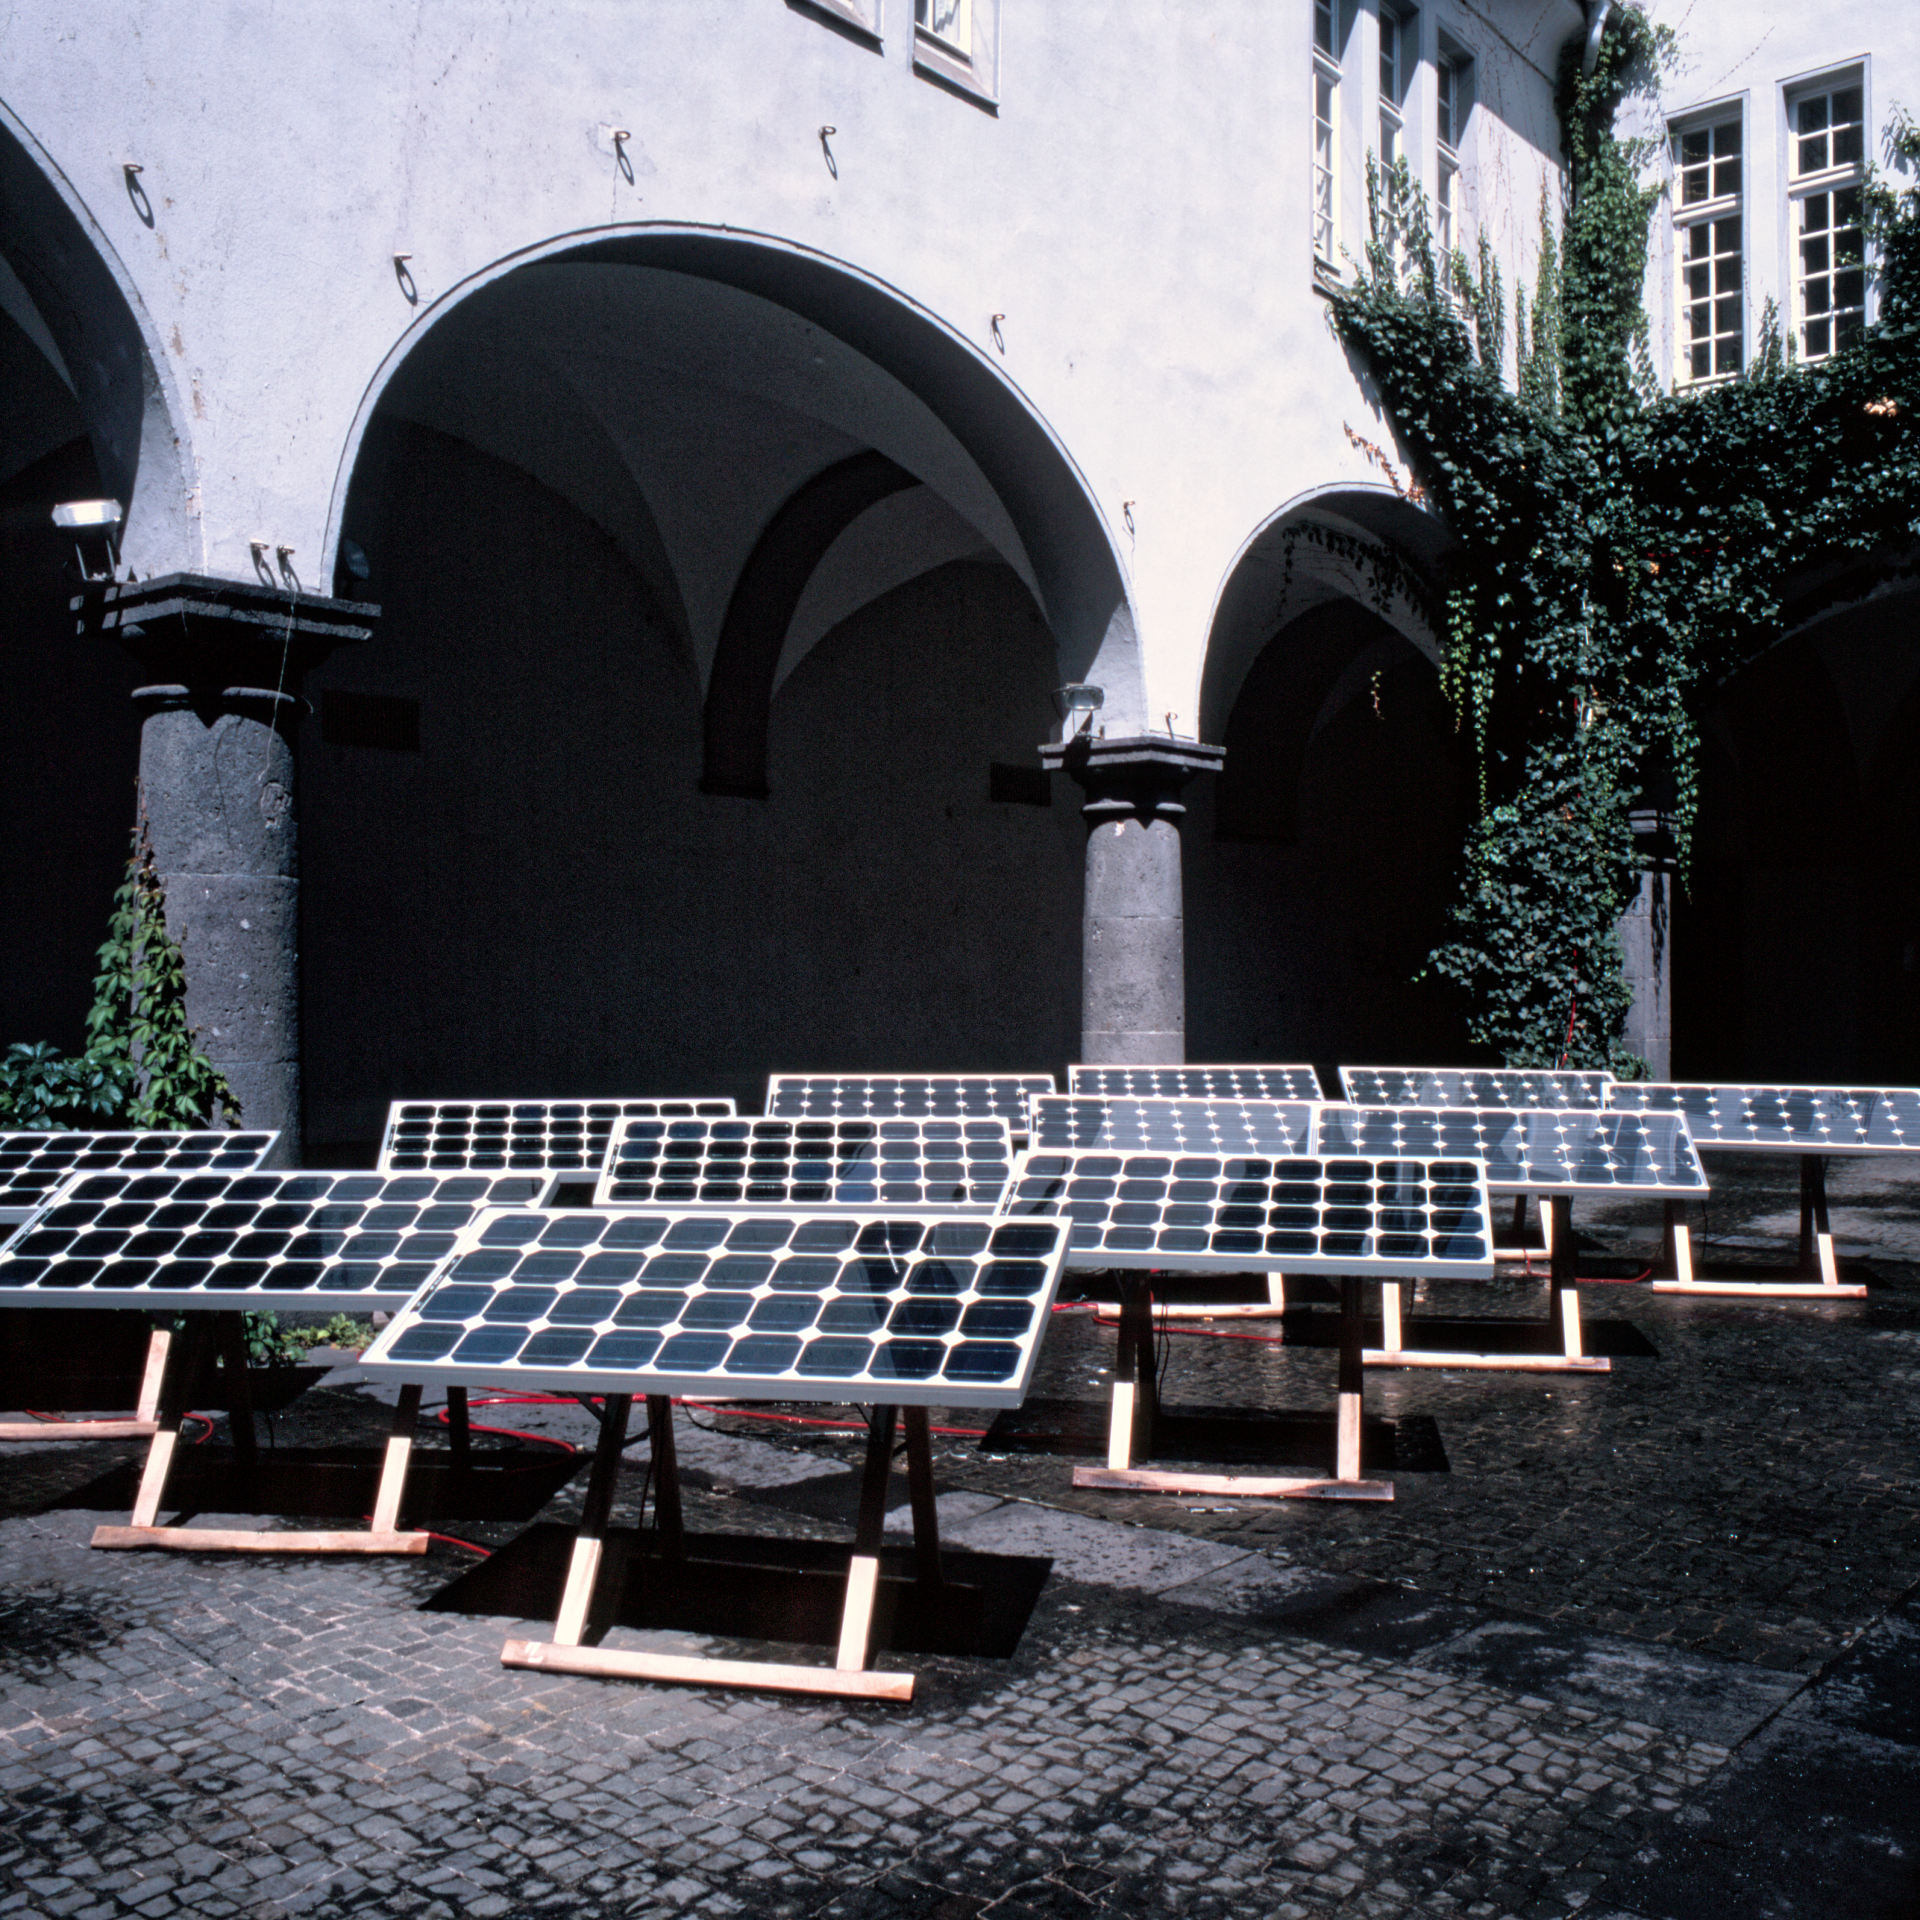 daniel_hausig_ueber_das_figur-hintergrundproblem-bei_solarzellen_1996_light-art-installation